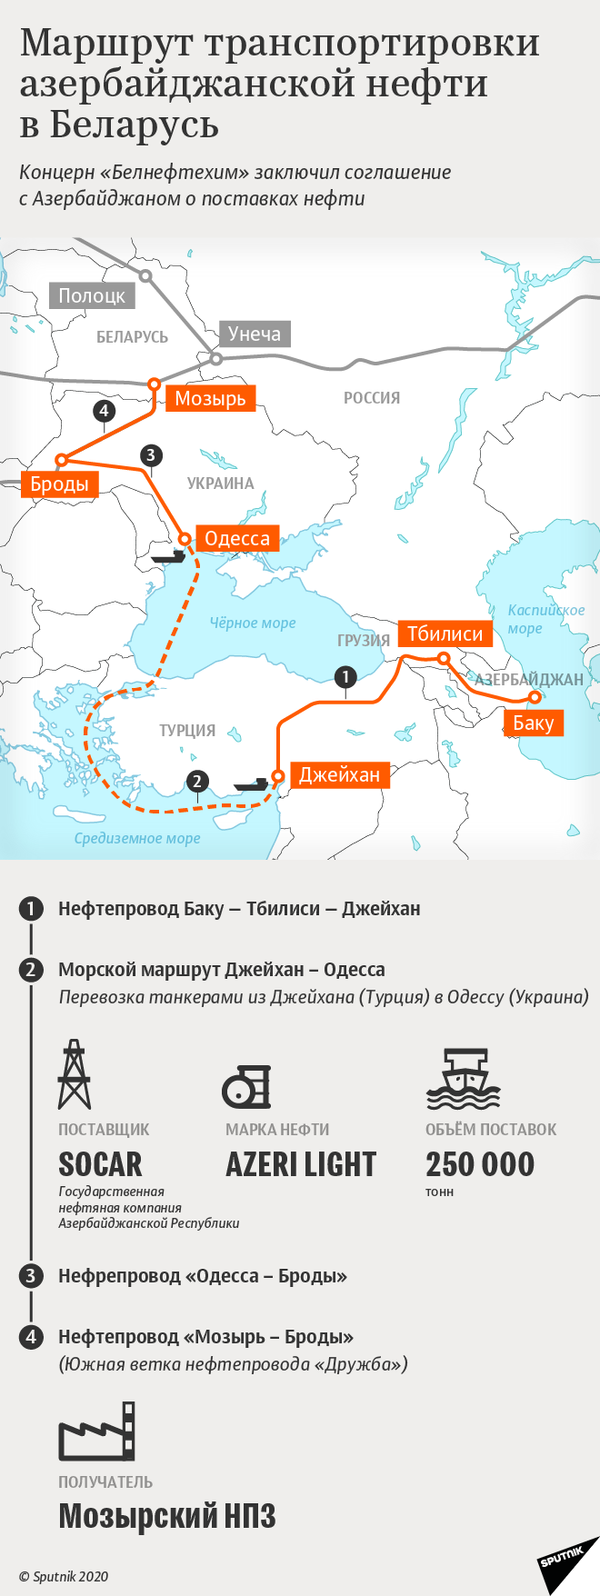 Маршрут транспортировки азербайджанской нефти в Беларусь | Инфографика sputnik.by - Sputnik Беларусь